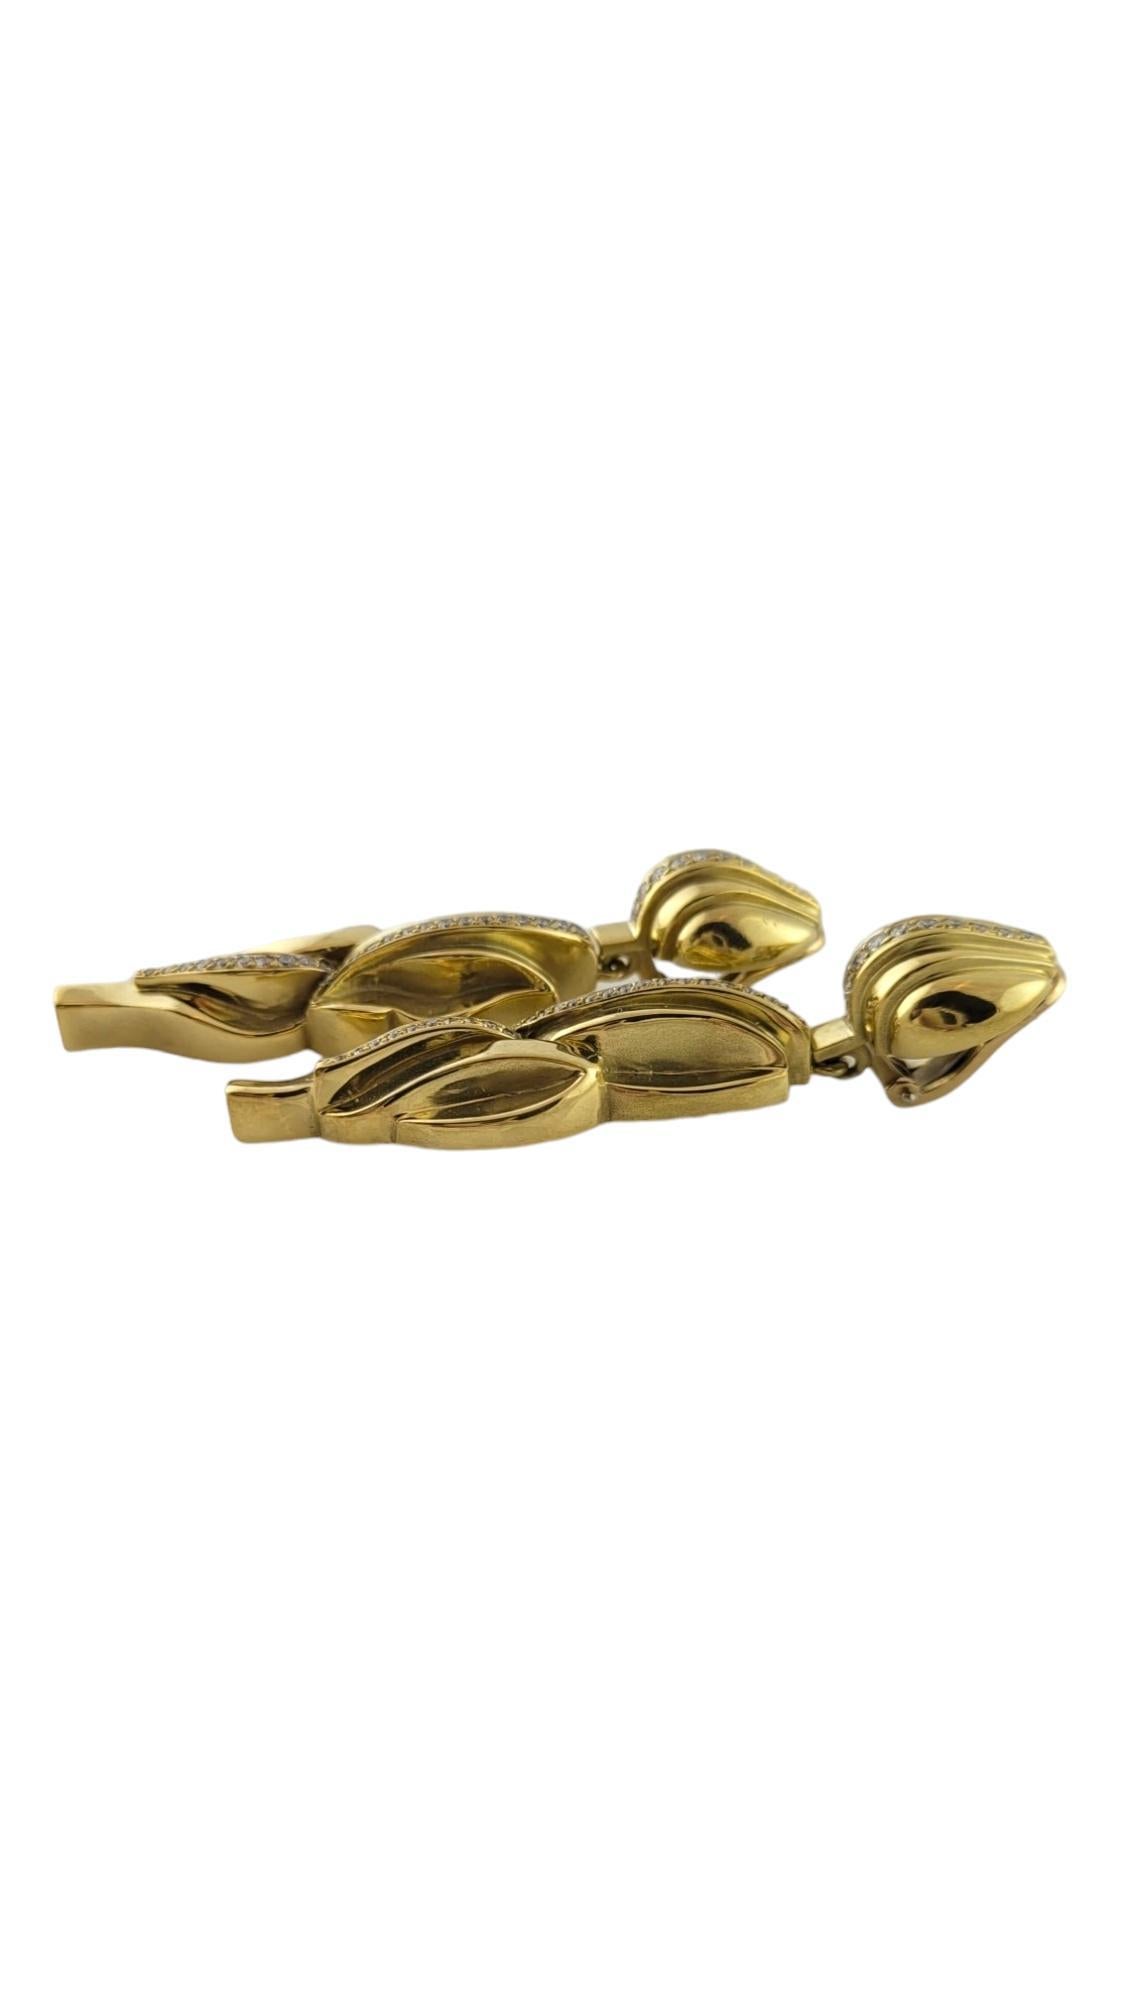 1983 Kieselstein Corde 18K Gelbgold Diamant-Baumel-Ohrringe

Diese wunderschönen Ohrringe sind aus 18-karätigem Gelbgold mit der für Kieselstein Corde charakteristischen matten Oberfläche gefertigt.

Ca. 1,45 ct Gesamtgewicht an Diamanten sind in